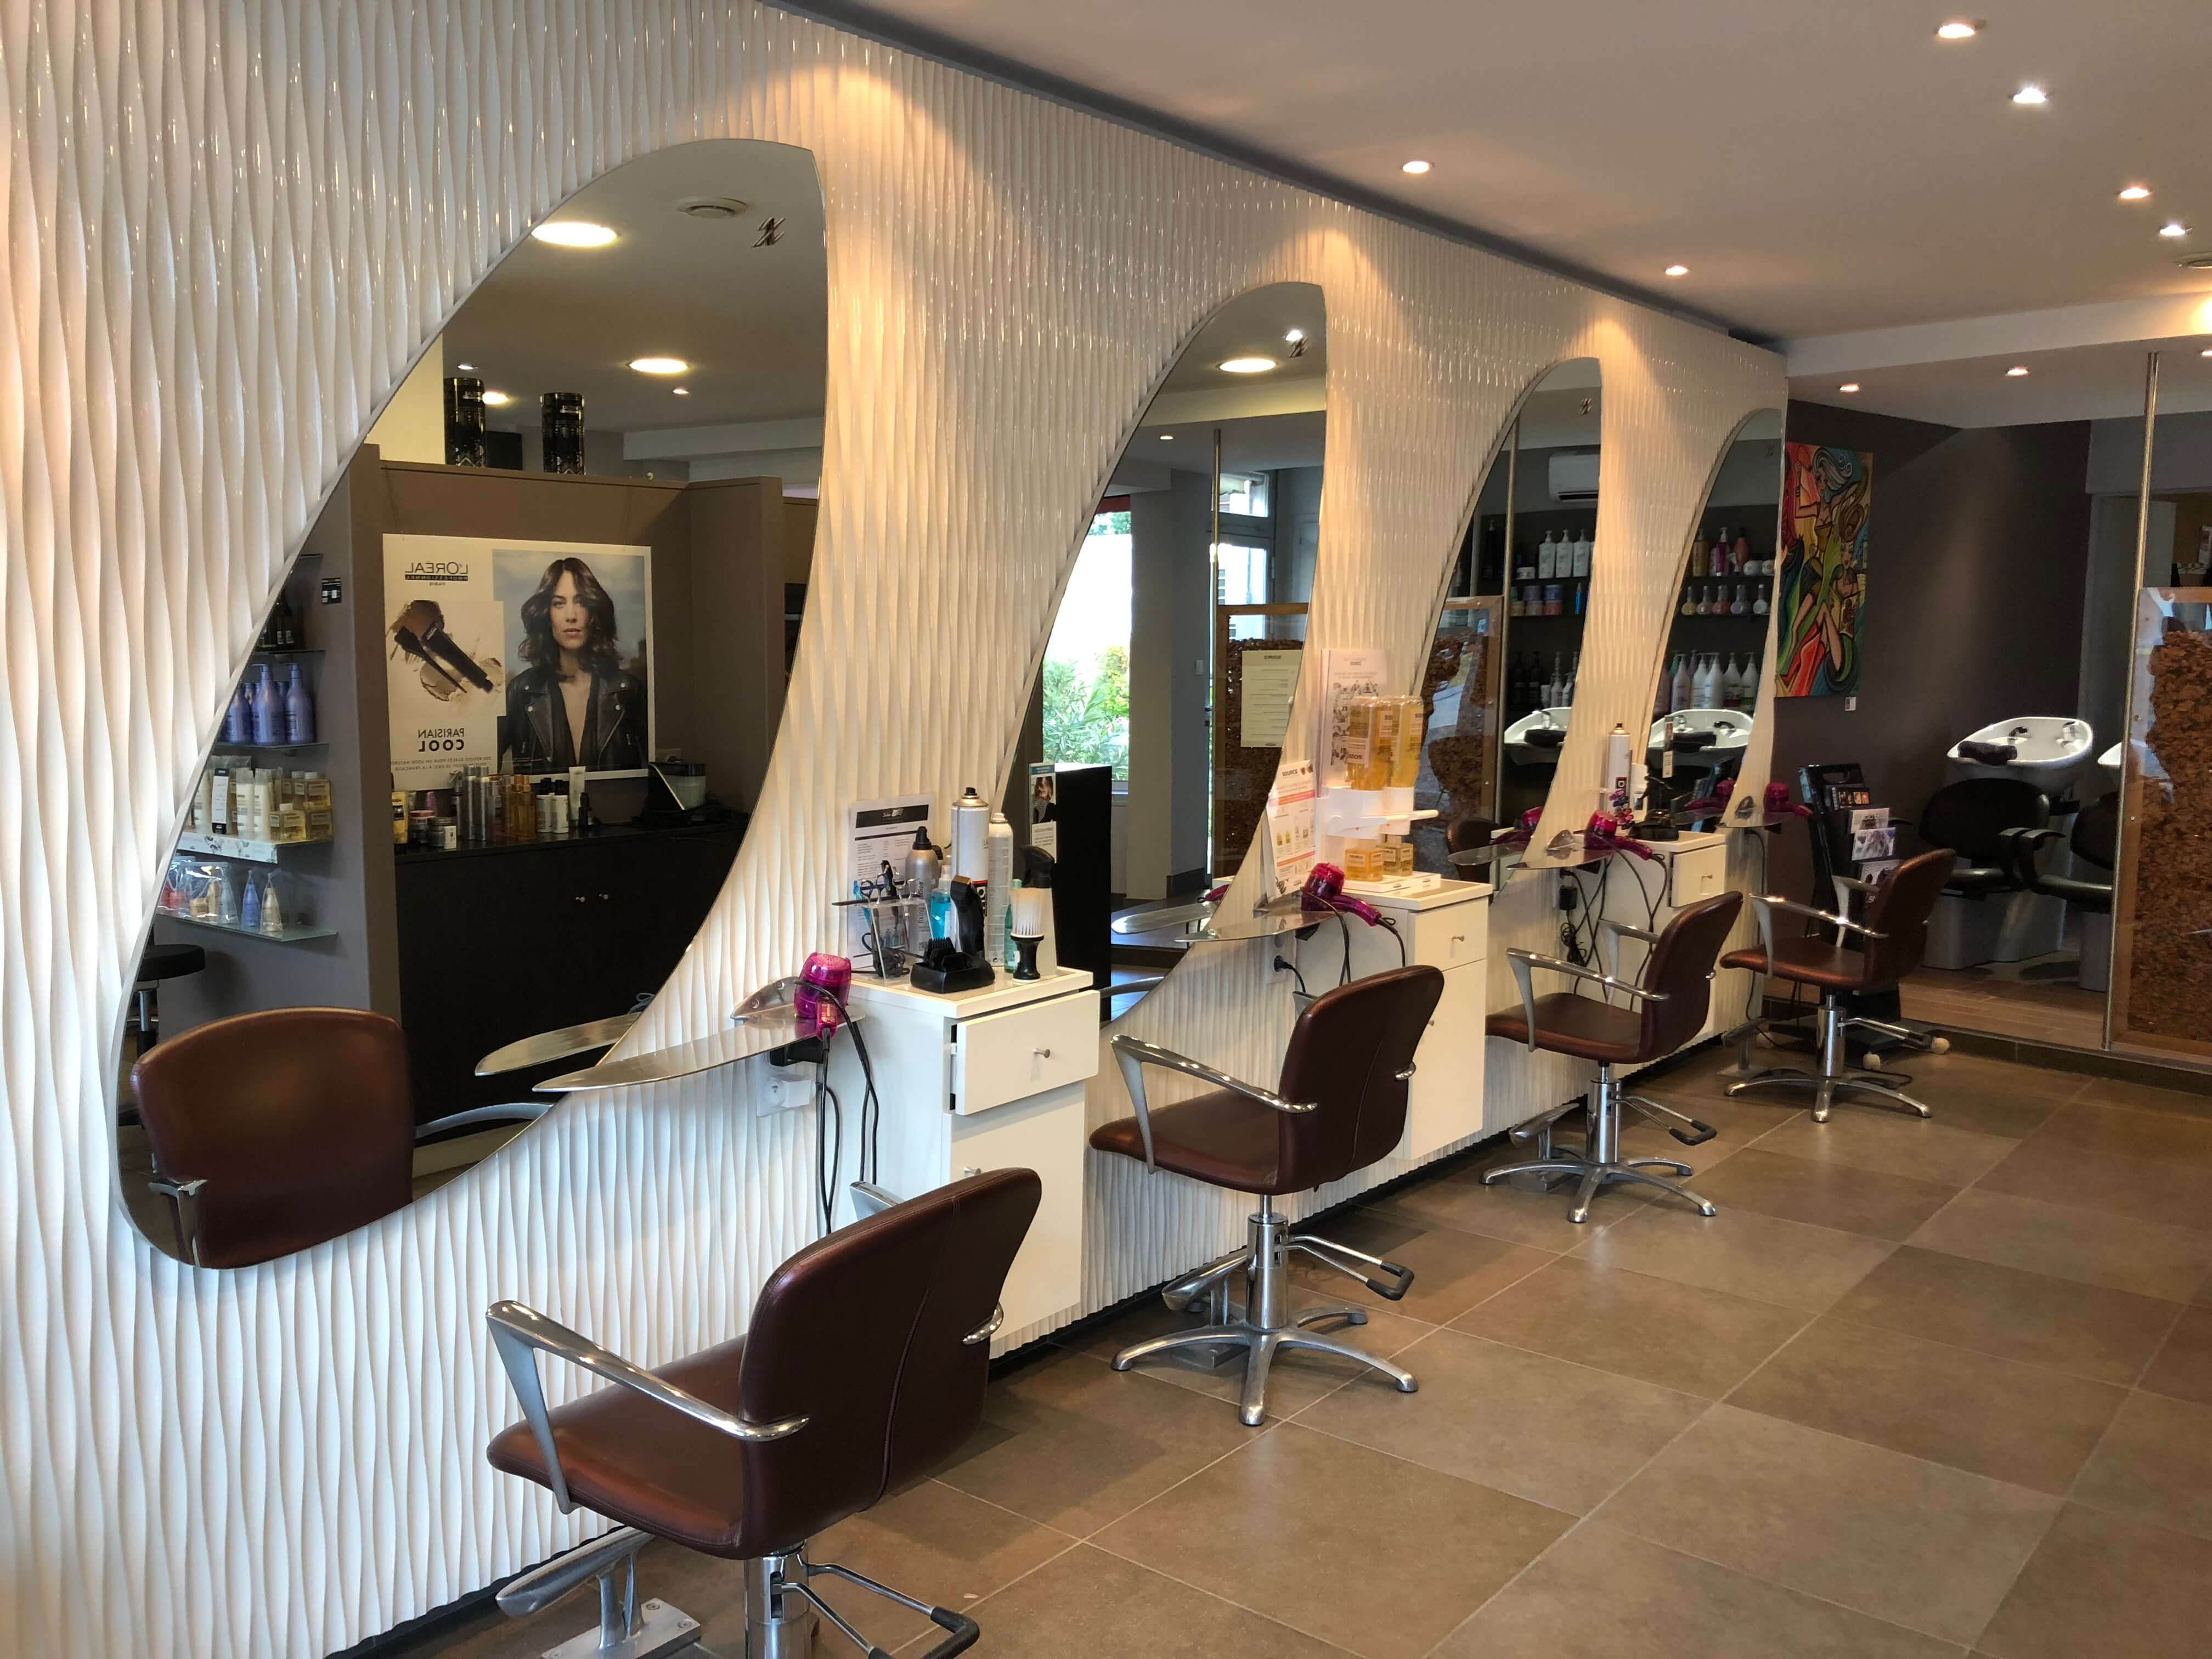 Les salons Baranger, salon de coiffure à Saint Hilaire de Riez, Sion-sur-l'océan, coiffeur, coiffure, evenementiel, coloriste, coupe, coiffure mixte, coupe mode, mèches, balayage, lissage, lissage brésilien